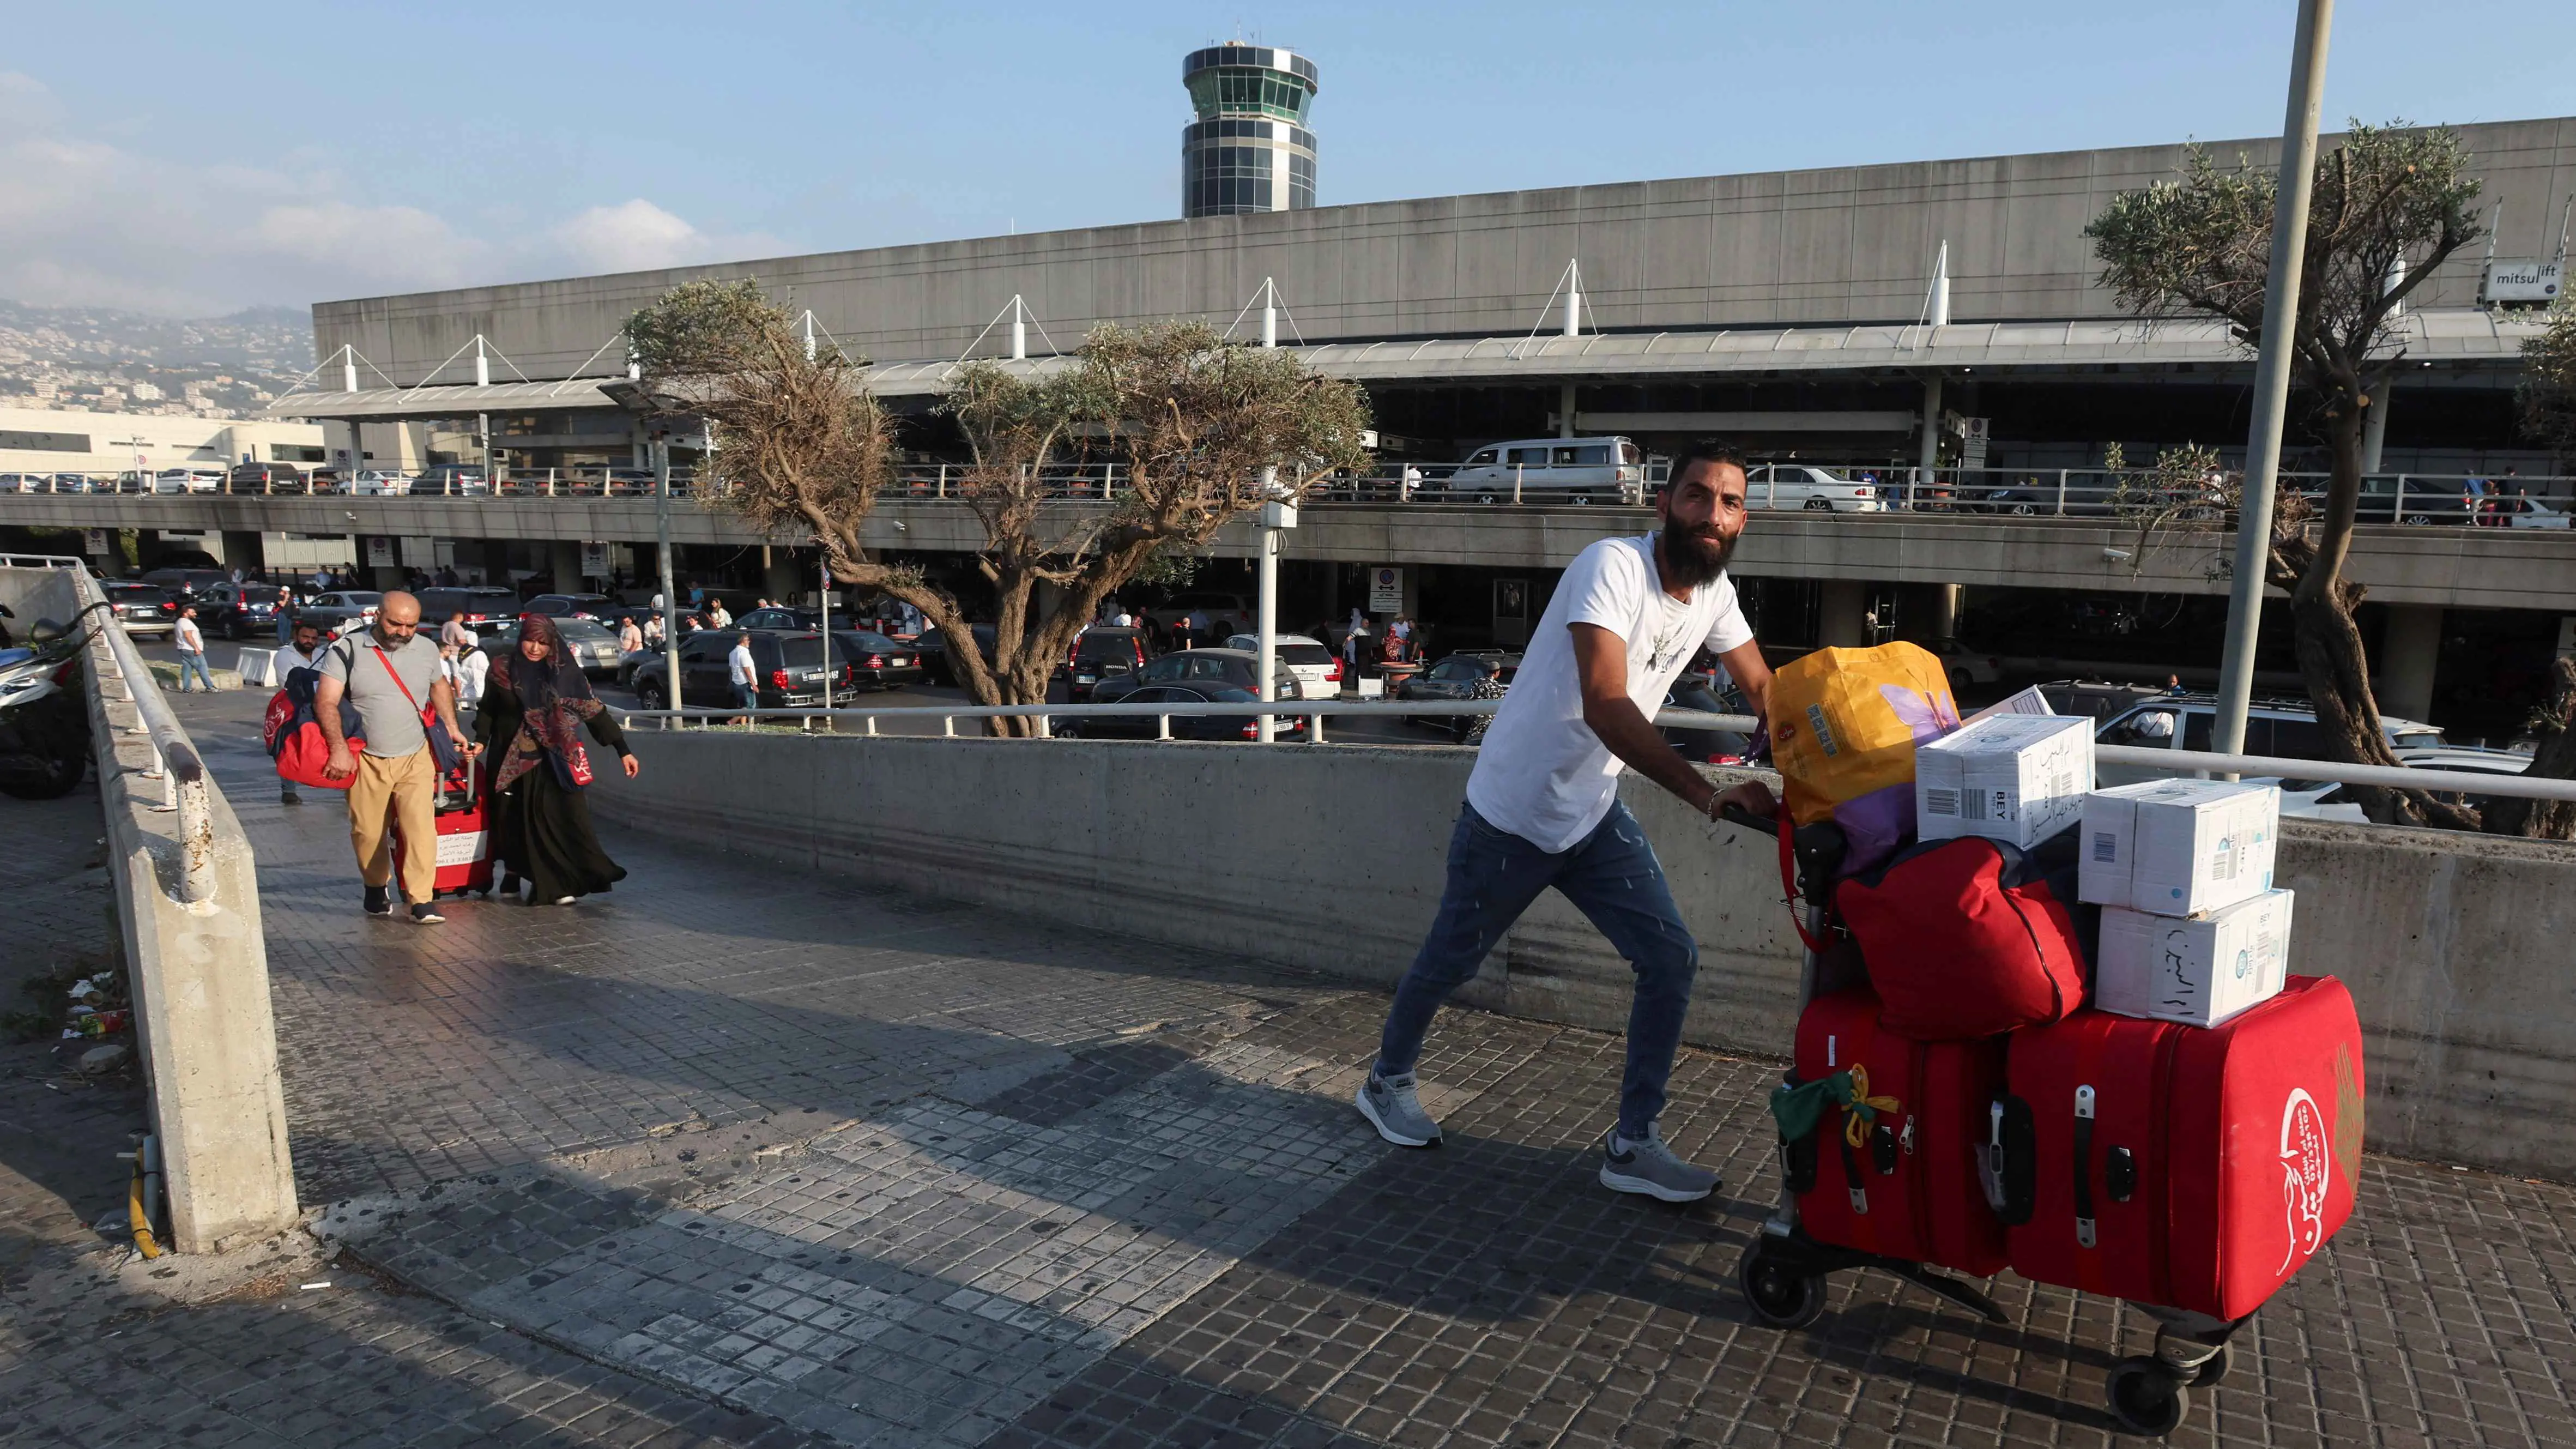 بعد التشويش على الـ"GPS"..  مطار بيروت معرض لمقذوفات "حزب الله"